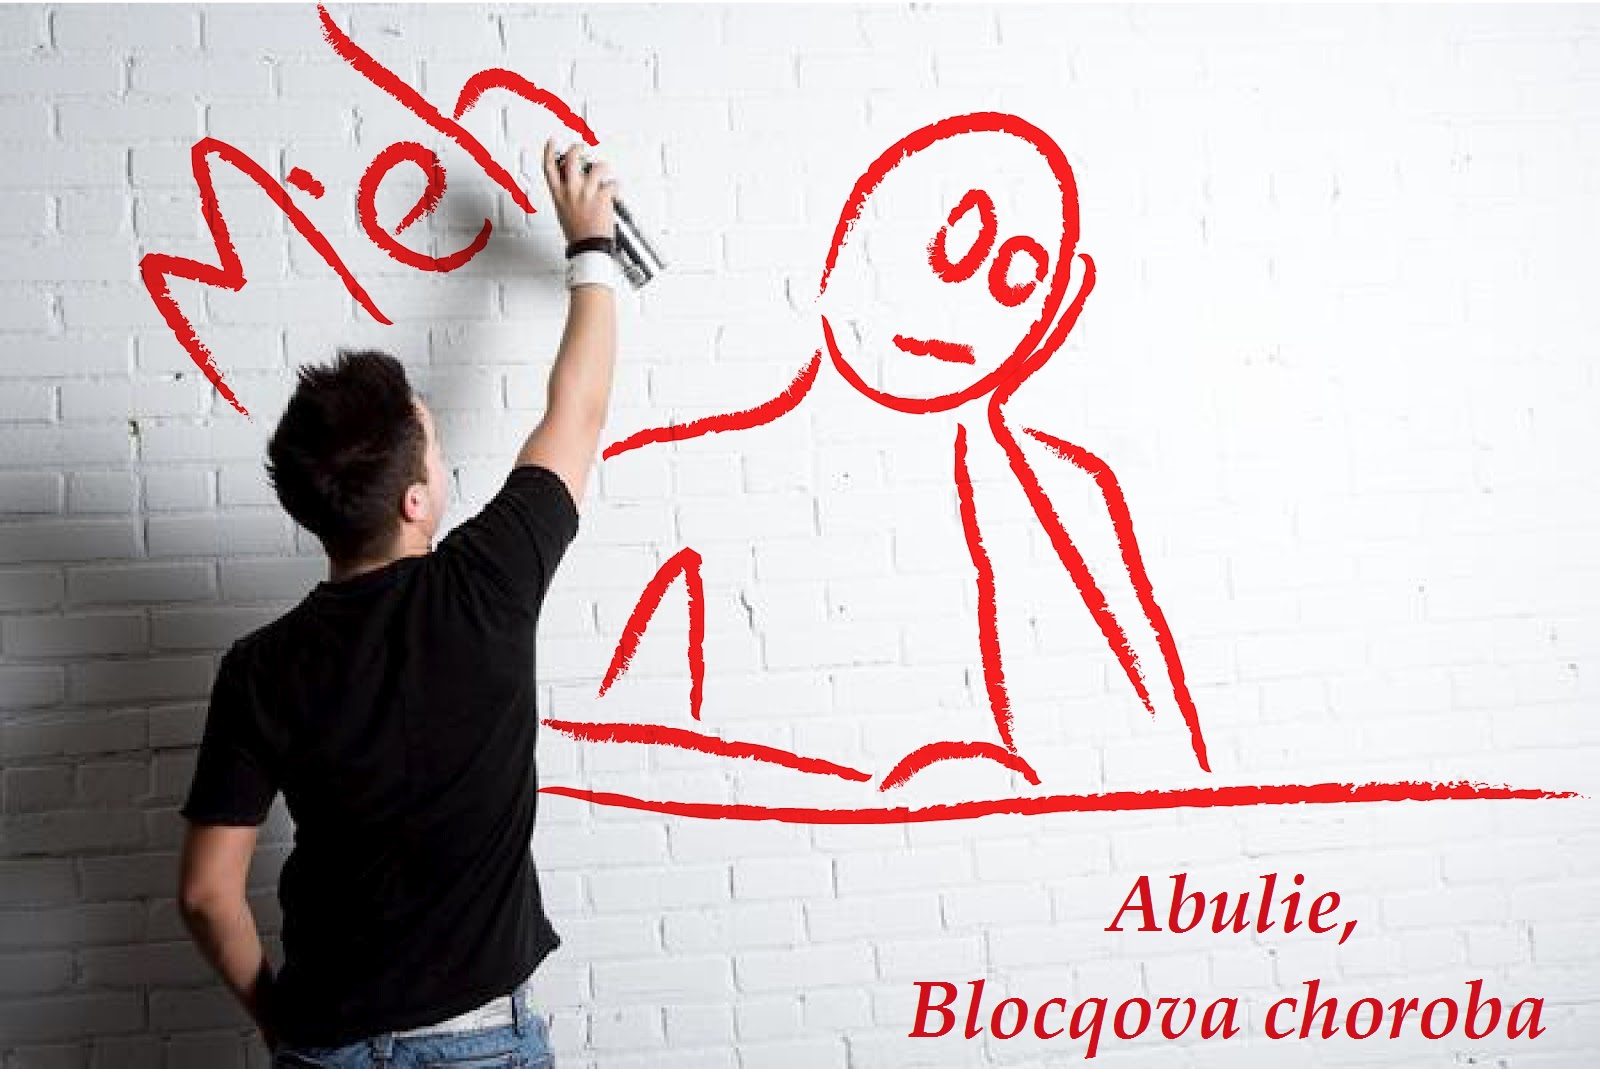 abulie-blocqova-choroba-priznaky-projevy-symptomy